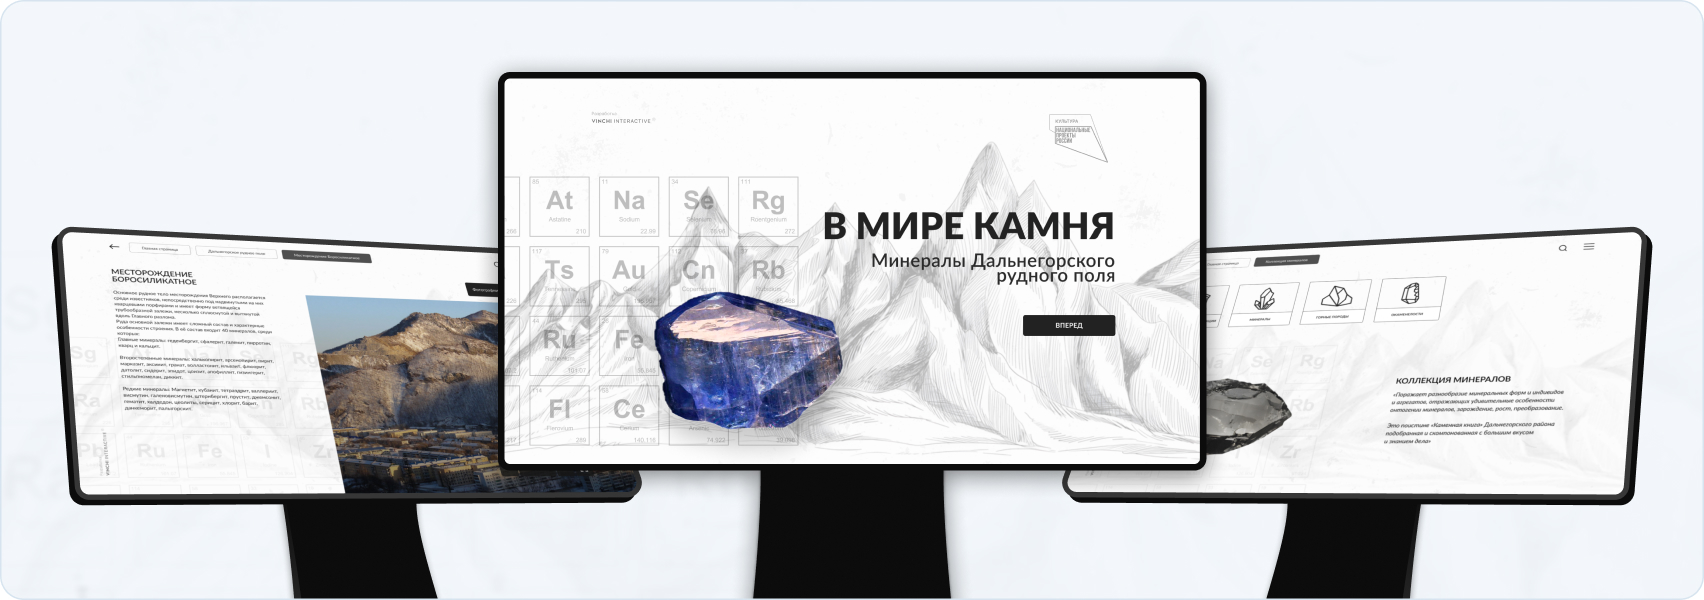 Информационный софт о минералах для музейно-выставочного центра г. Дальнегорска